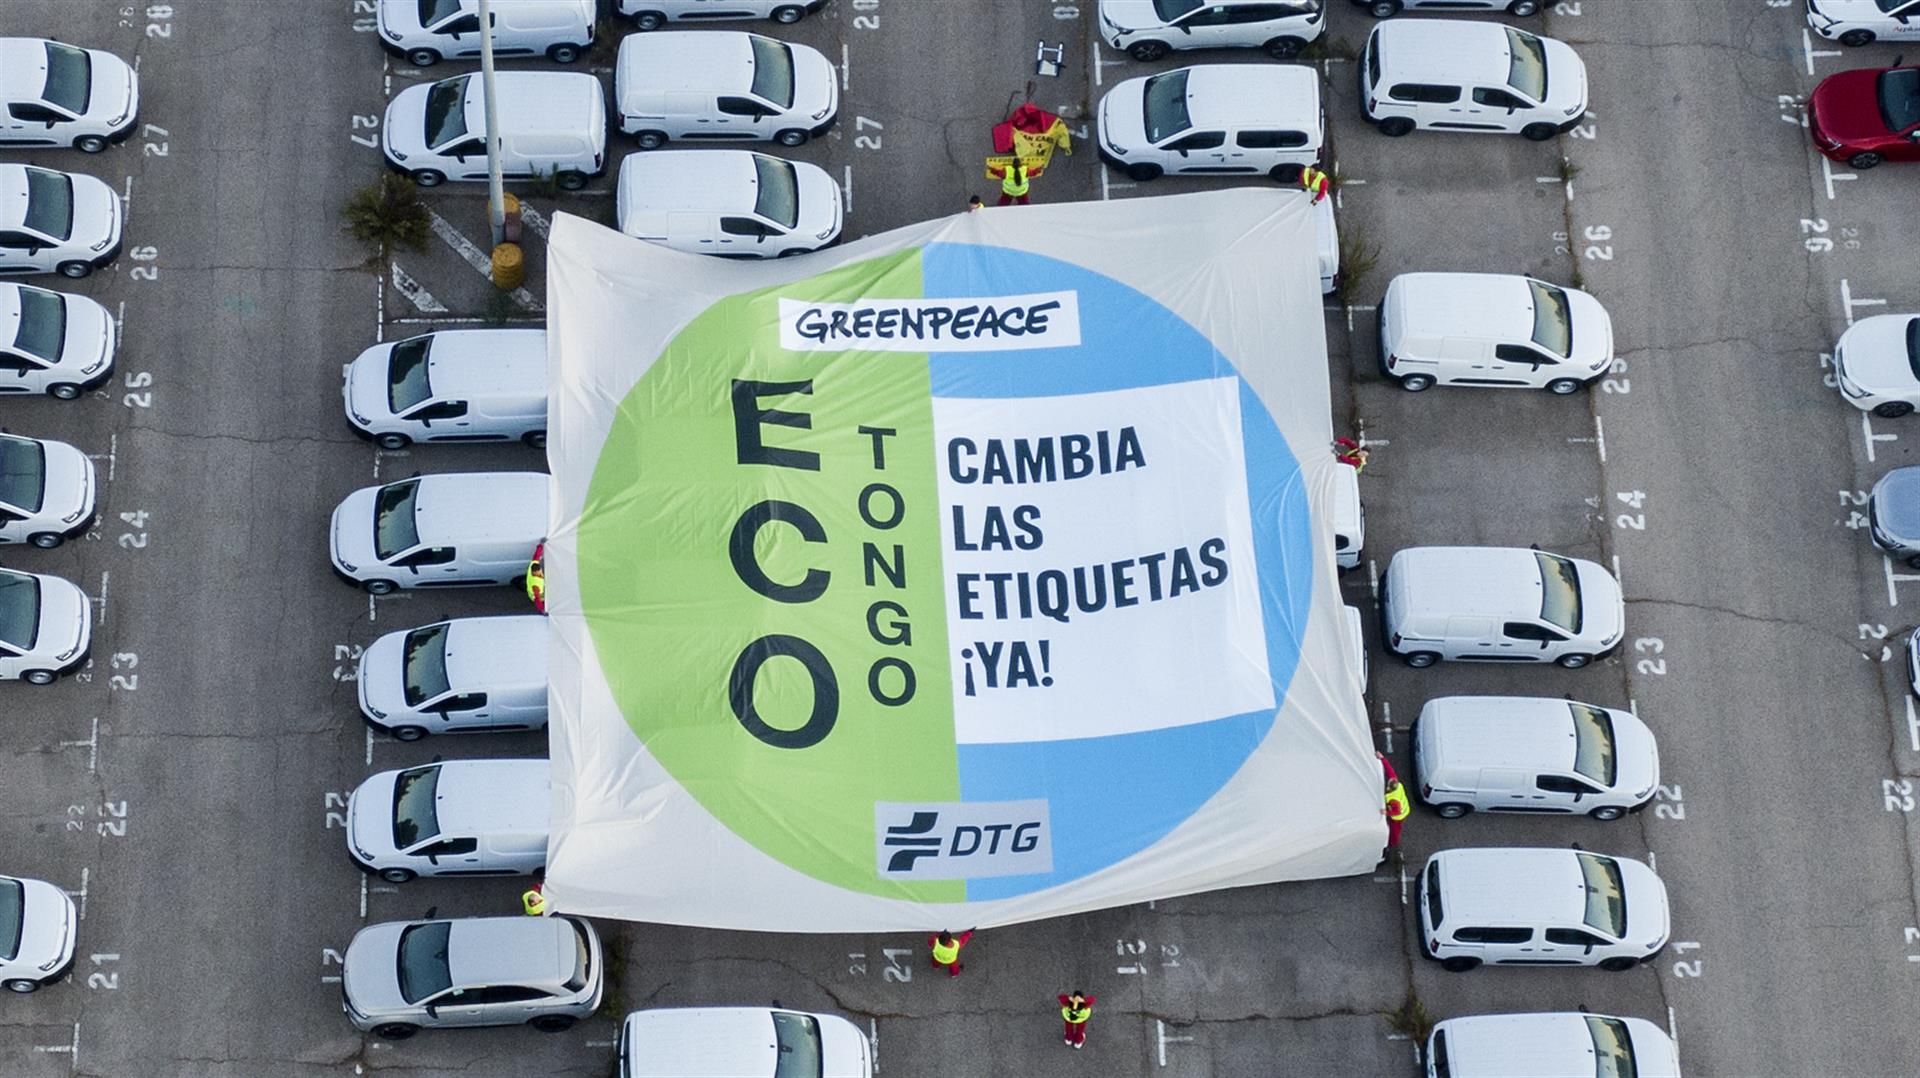 Fotografía facilitada por Greenpeace (Handout/Mario Gomez), cuyos activistas han accedido hoy a las instalaciones de un gran grupo de automoción en Villaverde (Madrid) para desplegar una enorme pancarta con forma de etiqueta de la DGT sobre decenas de automóviles. EFE